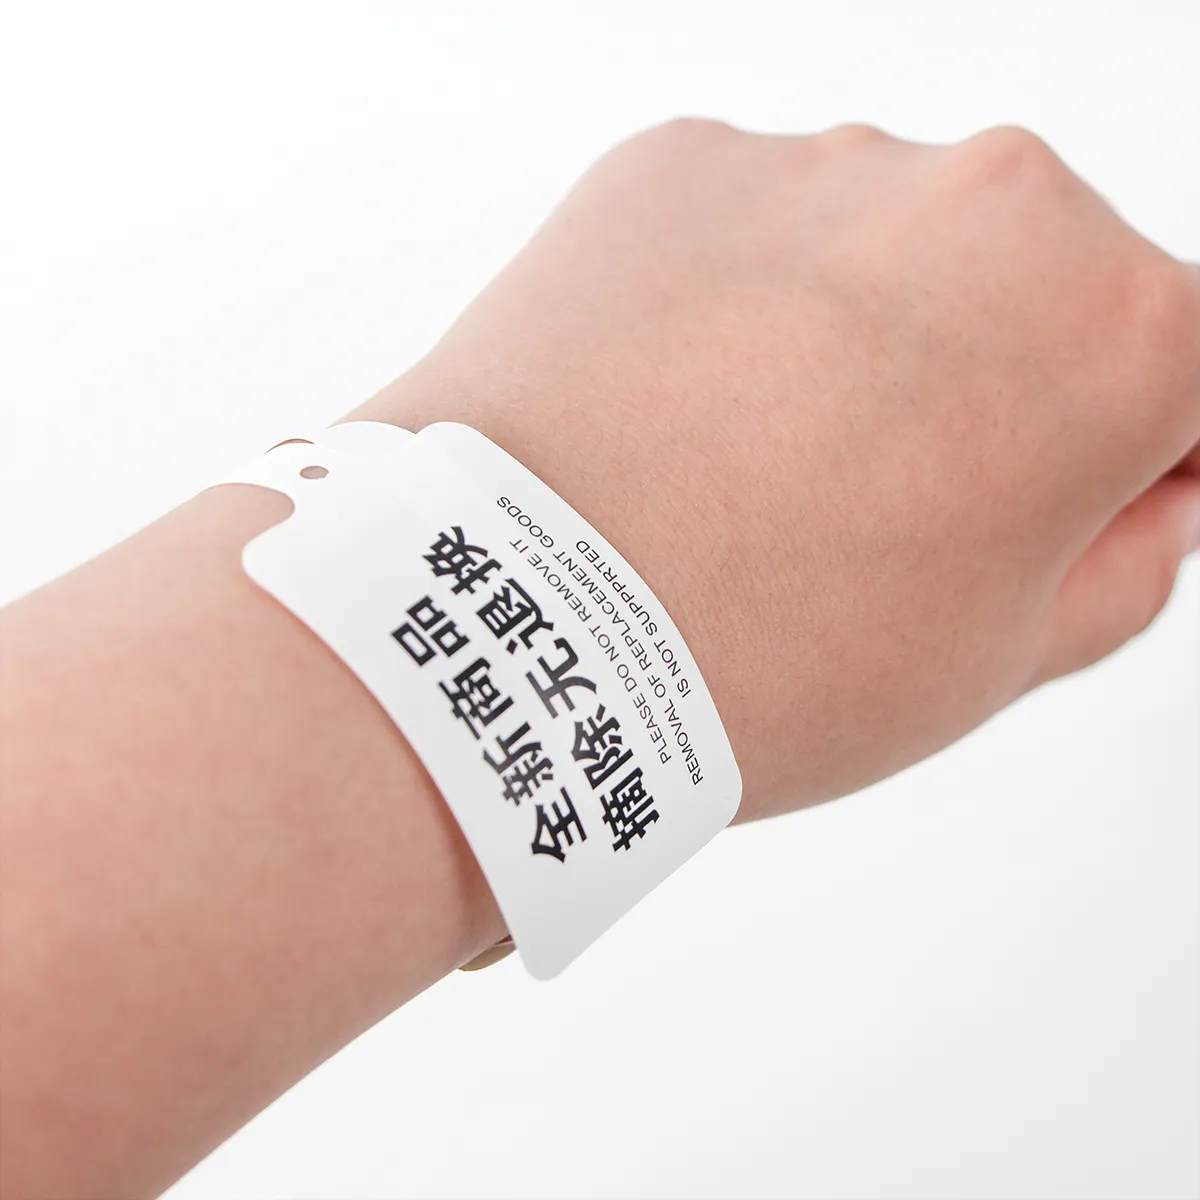 สายรัดข้อมือสำหรับผู้ป่วยในโรงพยาบาลสายรัดข้อมือพิมพ์ลาย ID ทางการแพทย์